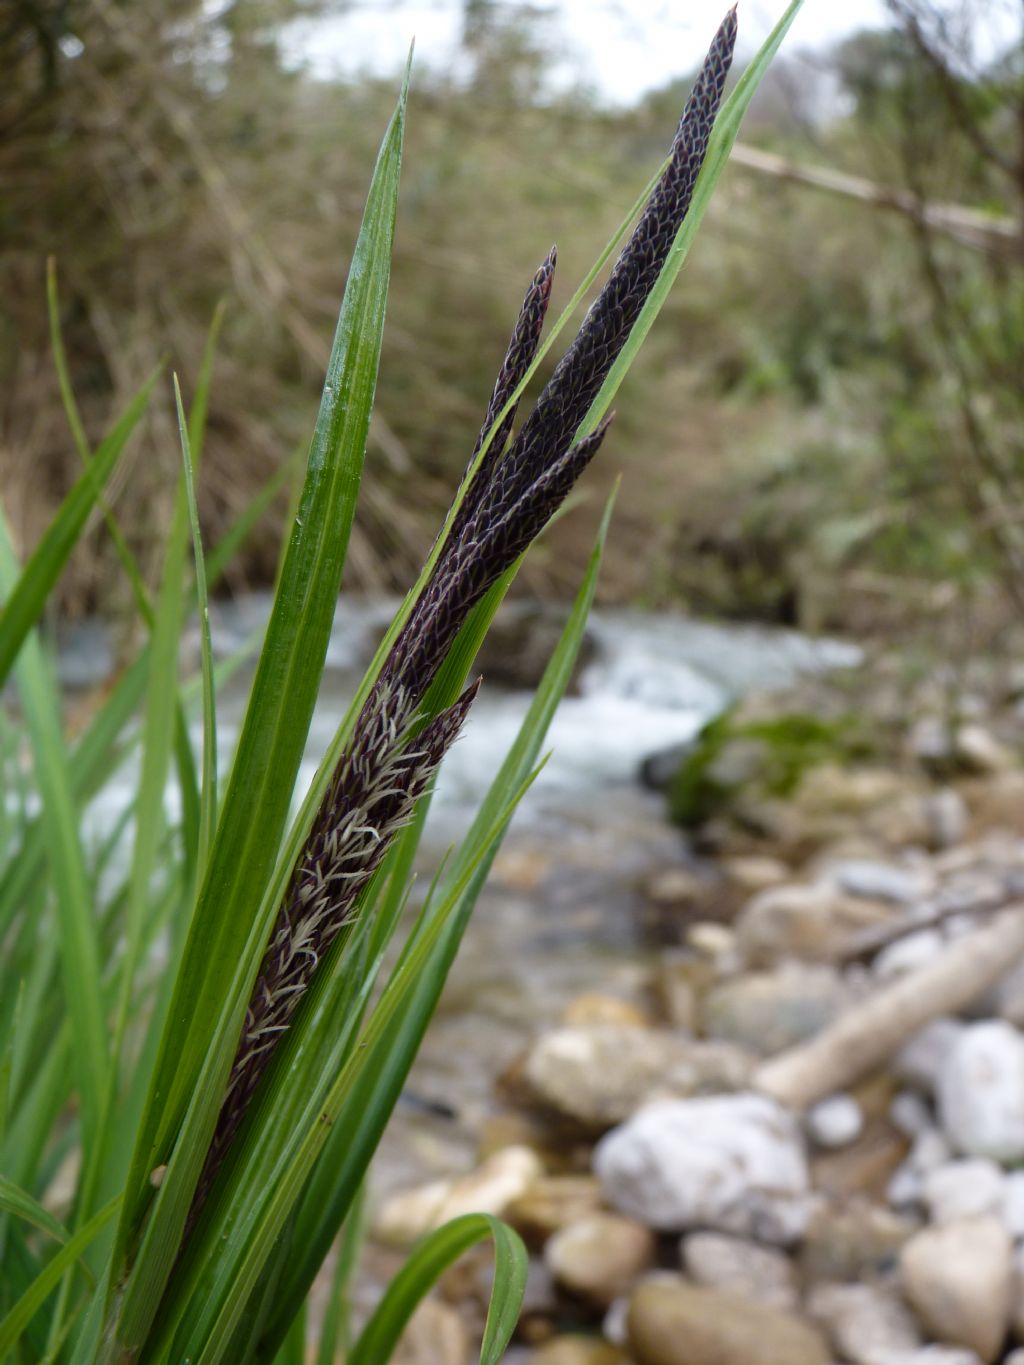 Carex panormitana Guss. / Carice palermitana